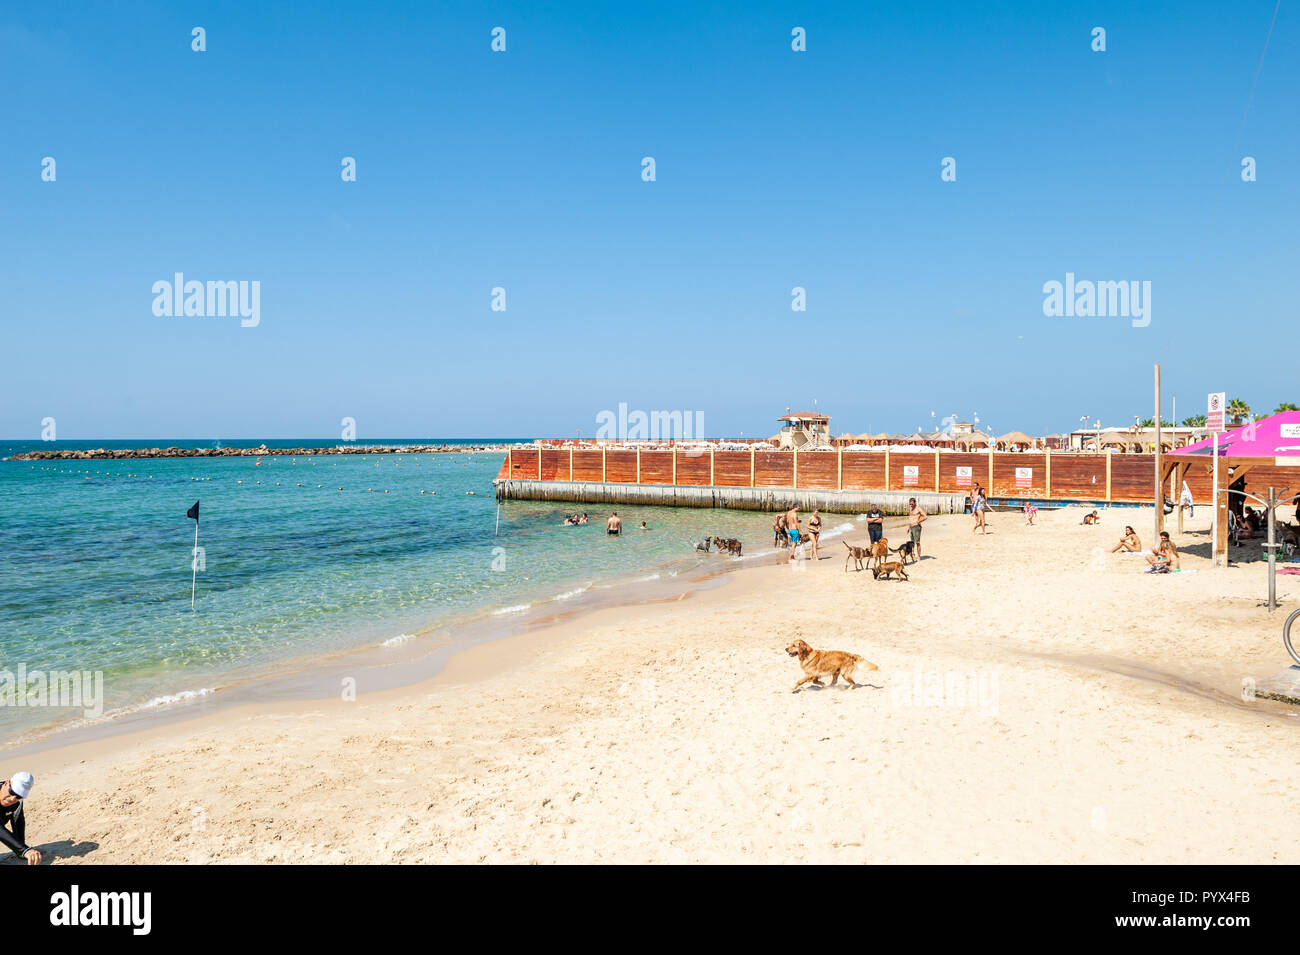 Israel, Tel Aviv - 24 September 2018: Dog beach Stock Photo